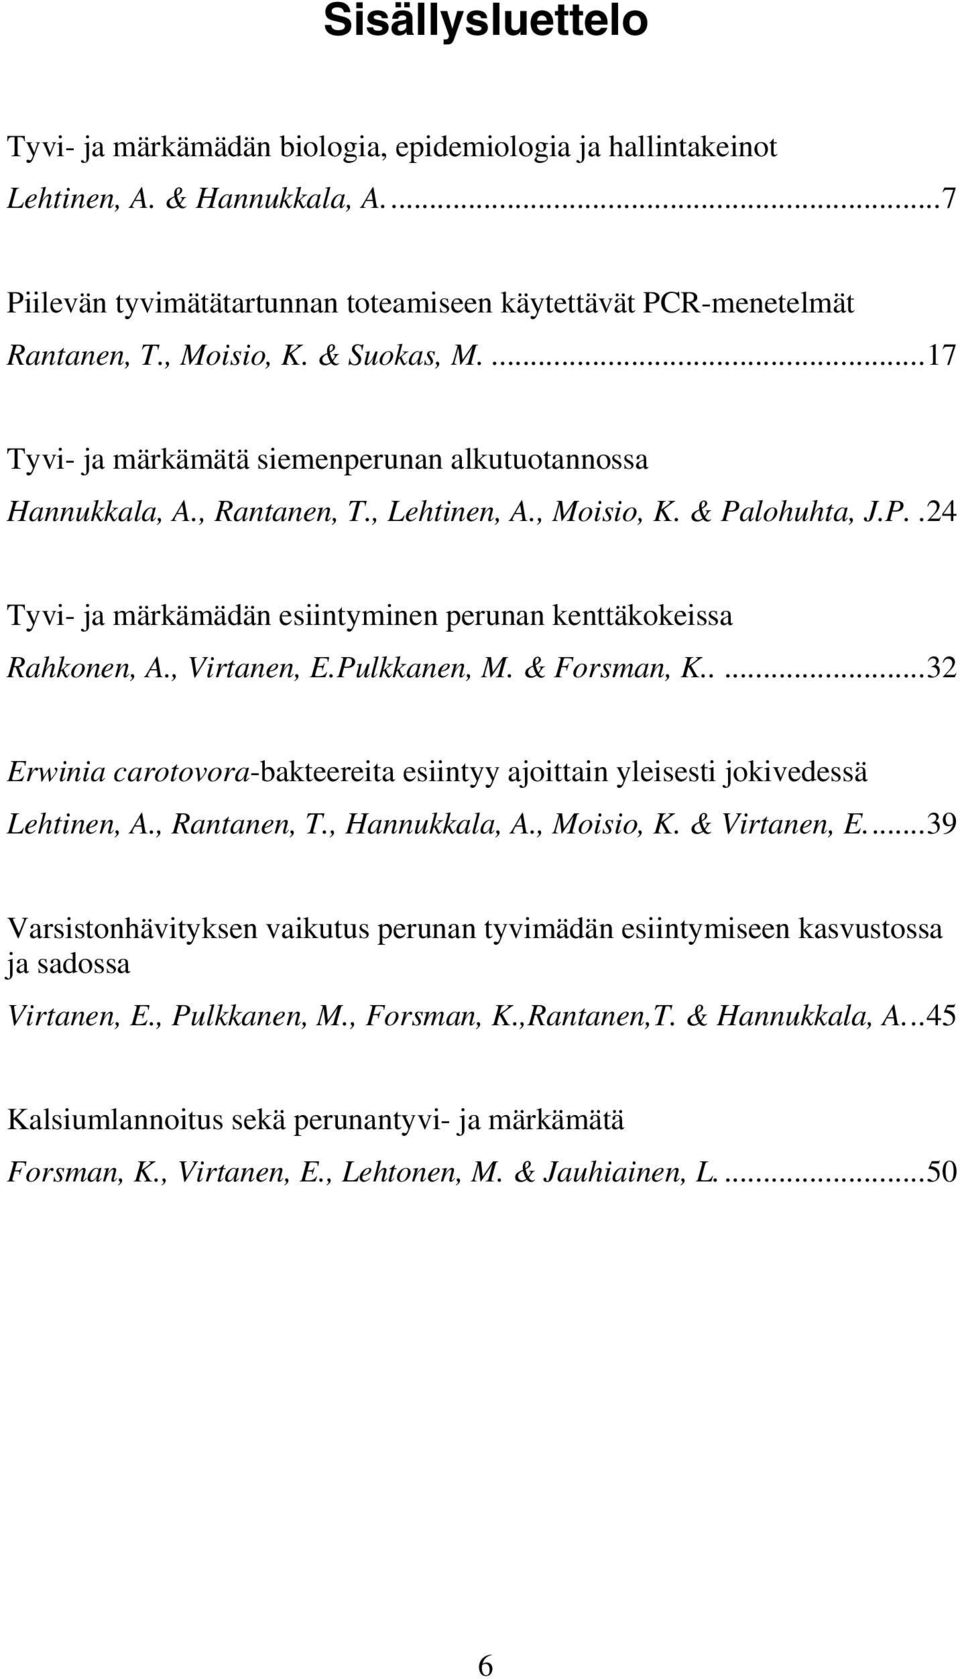 lohuhta, J.P..24 Tyvi- ja märkämädän esiintyminen perunan kenttäkokeissa Rahkonen, A., Virtanen, E.Pulkkanen, M. & Forsman, K.